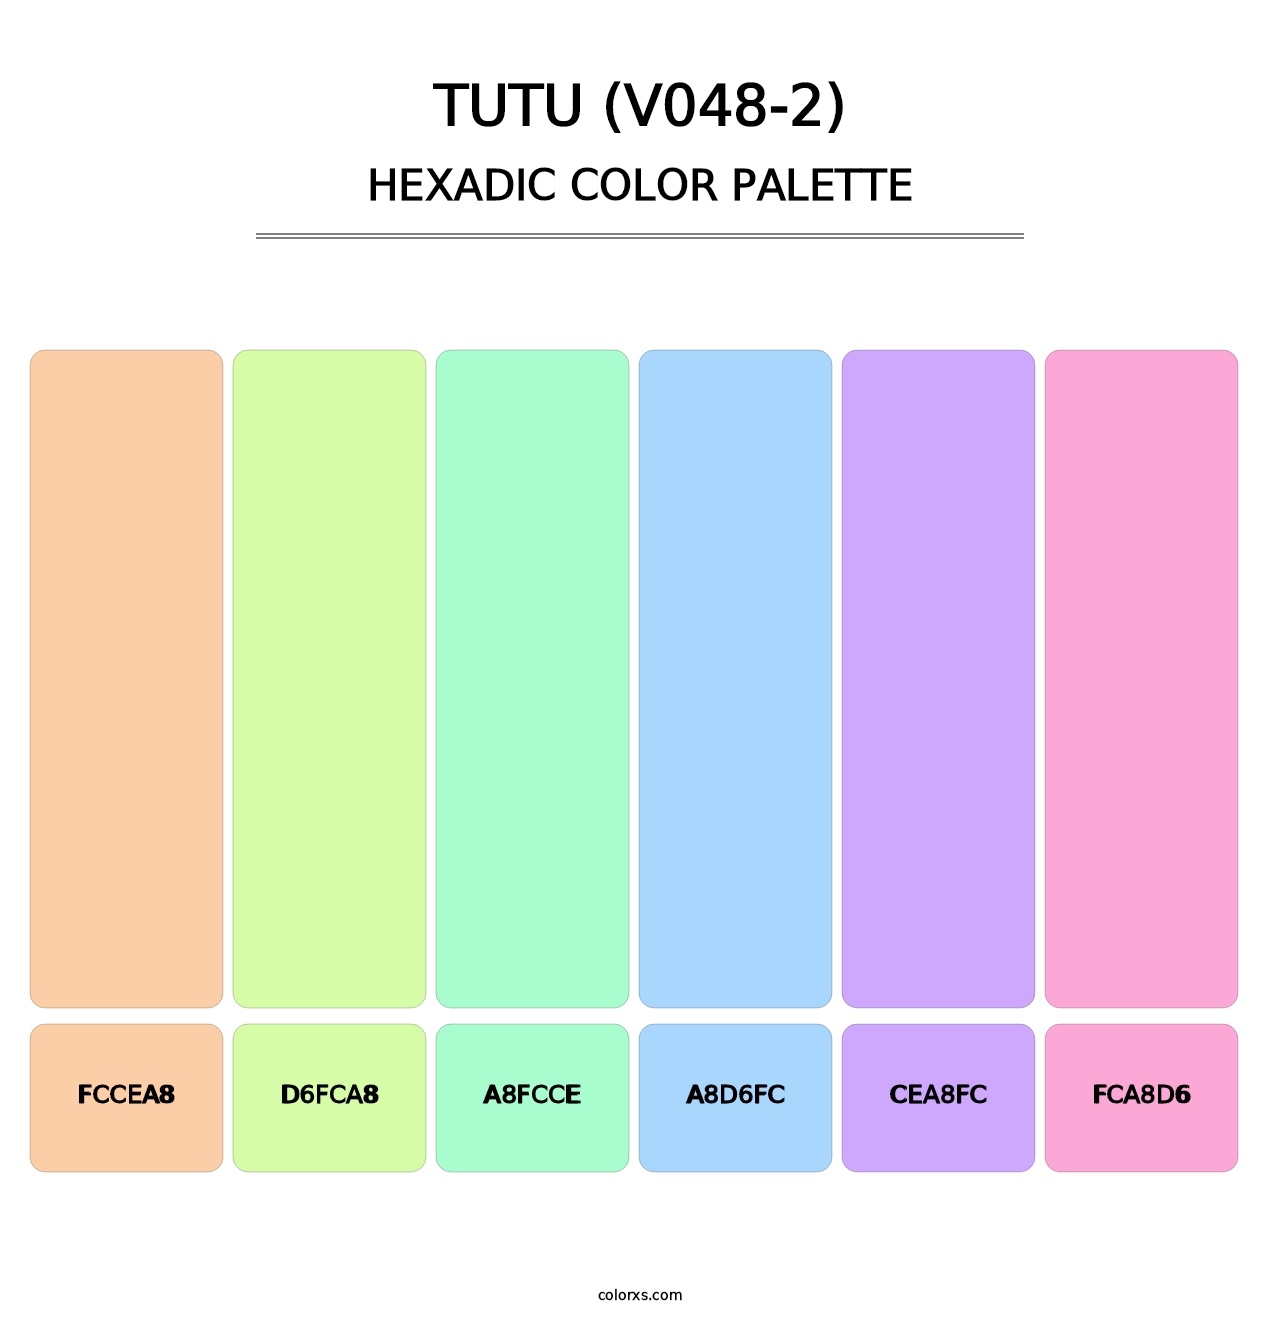 Tutu (V048-2) - Hexadic Color Palette